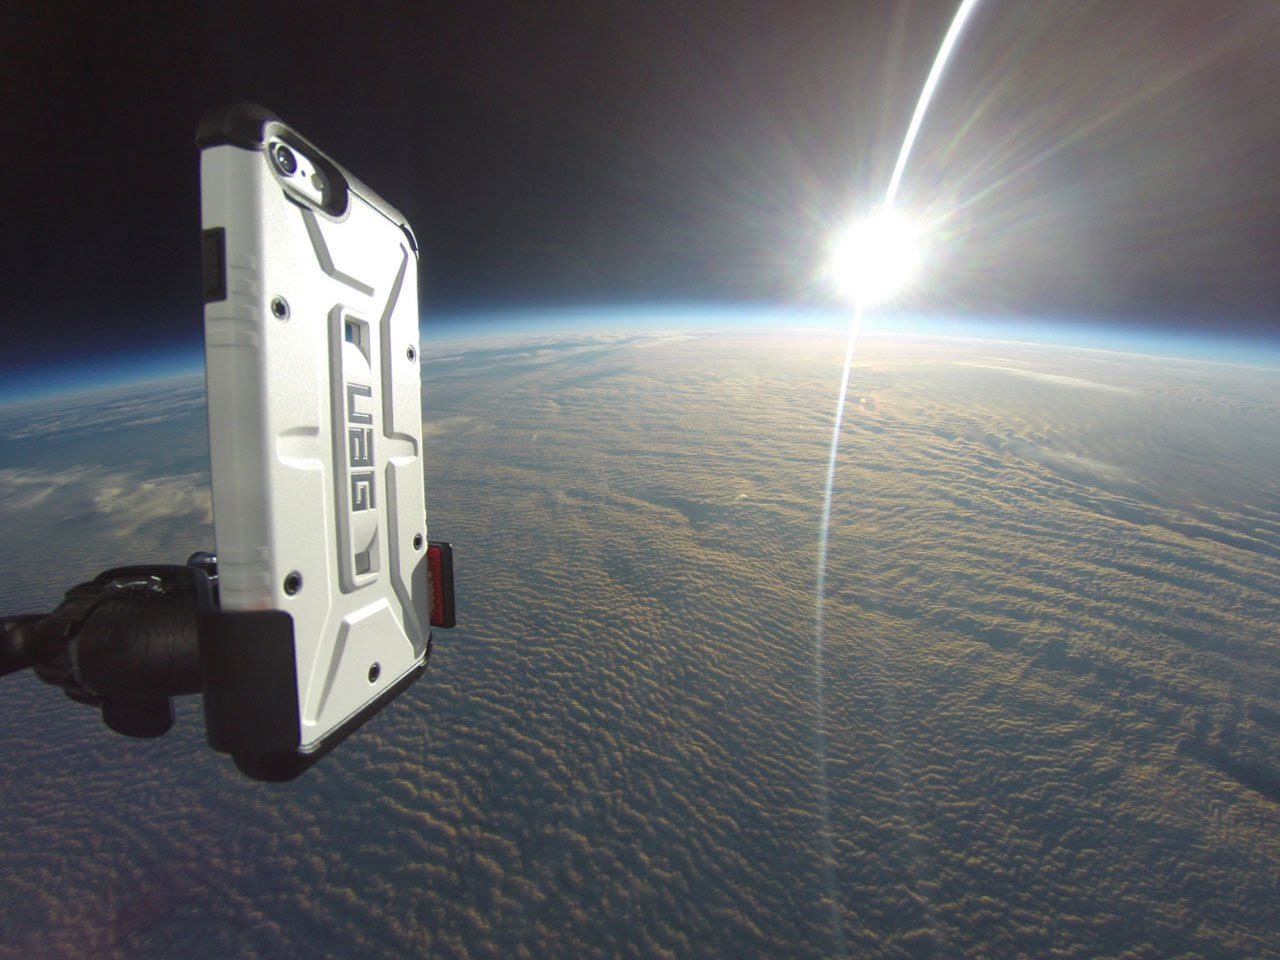 لحظة إلقاء «آيفون 6» من الفضاء